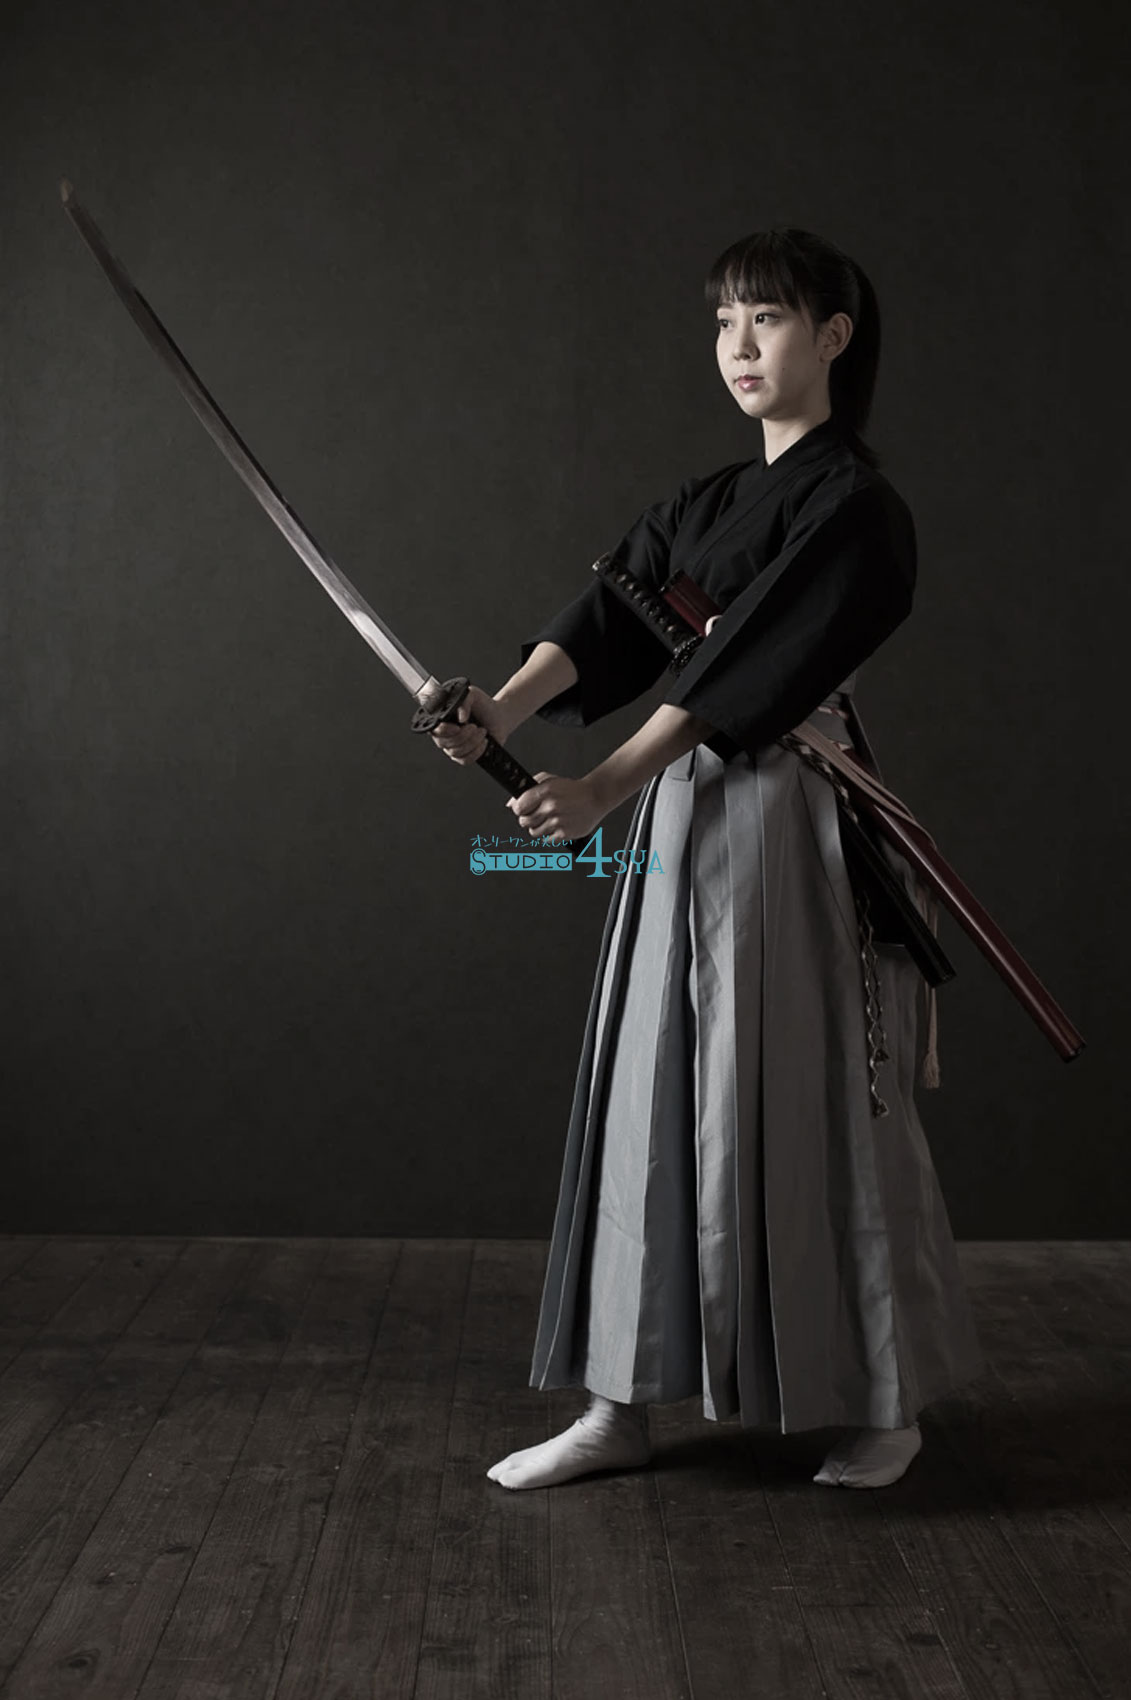 日本刀を構える日本人女性モデル